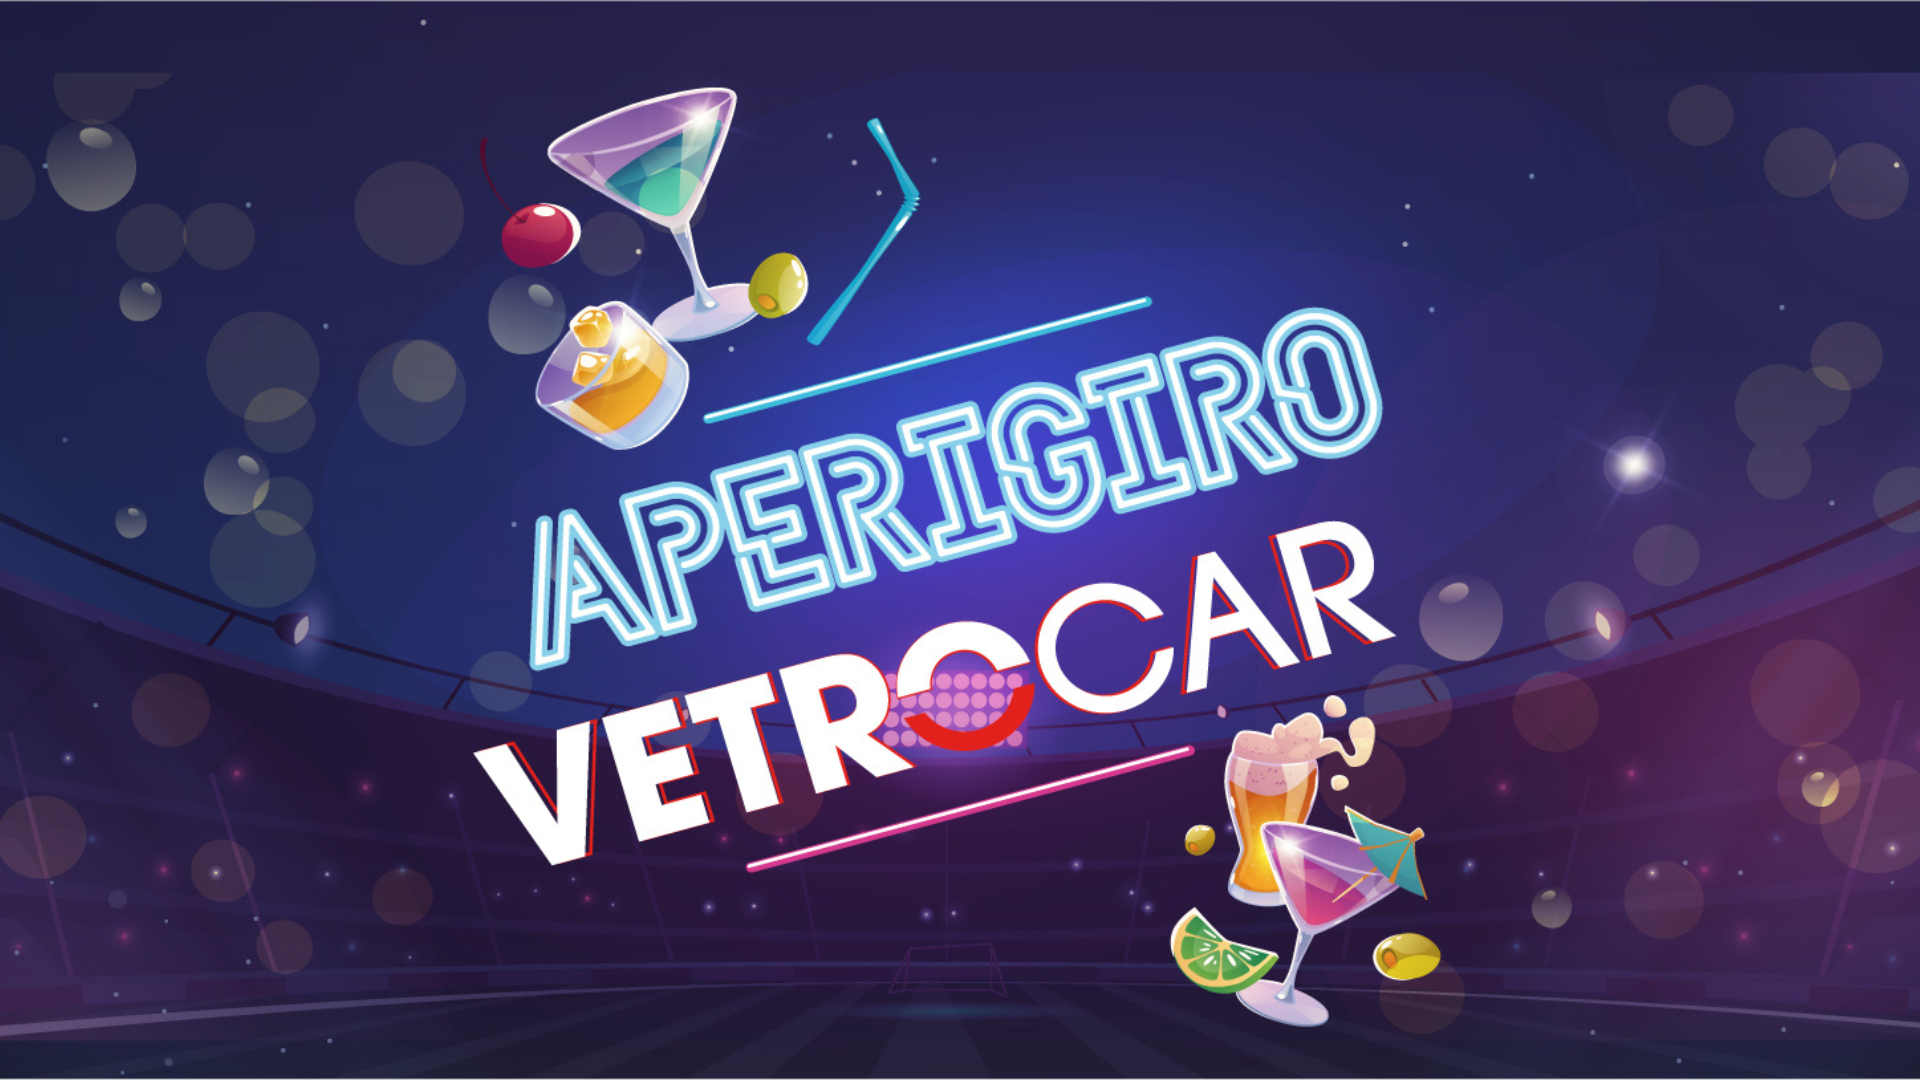 VetroCar sul terreno di gioco assieme ai suoi partner assicurativi